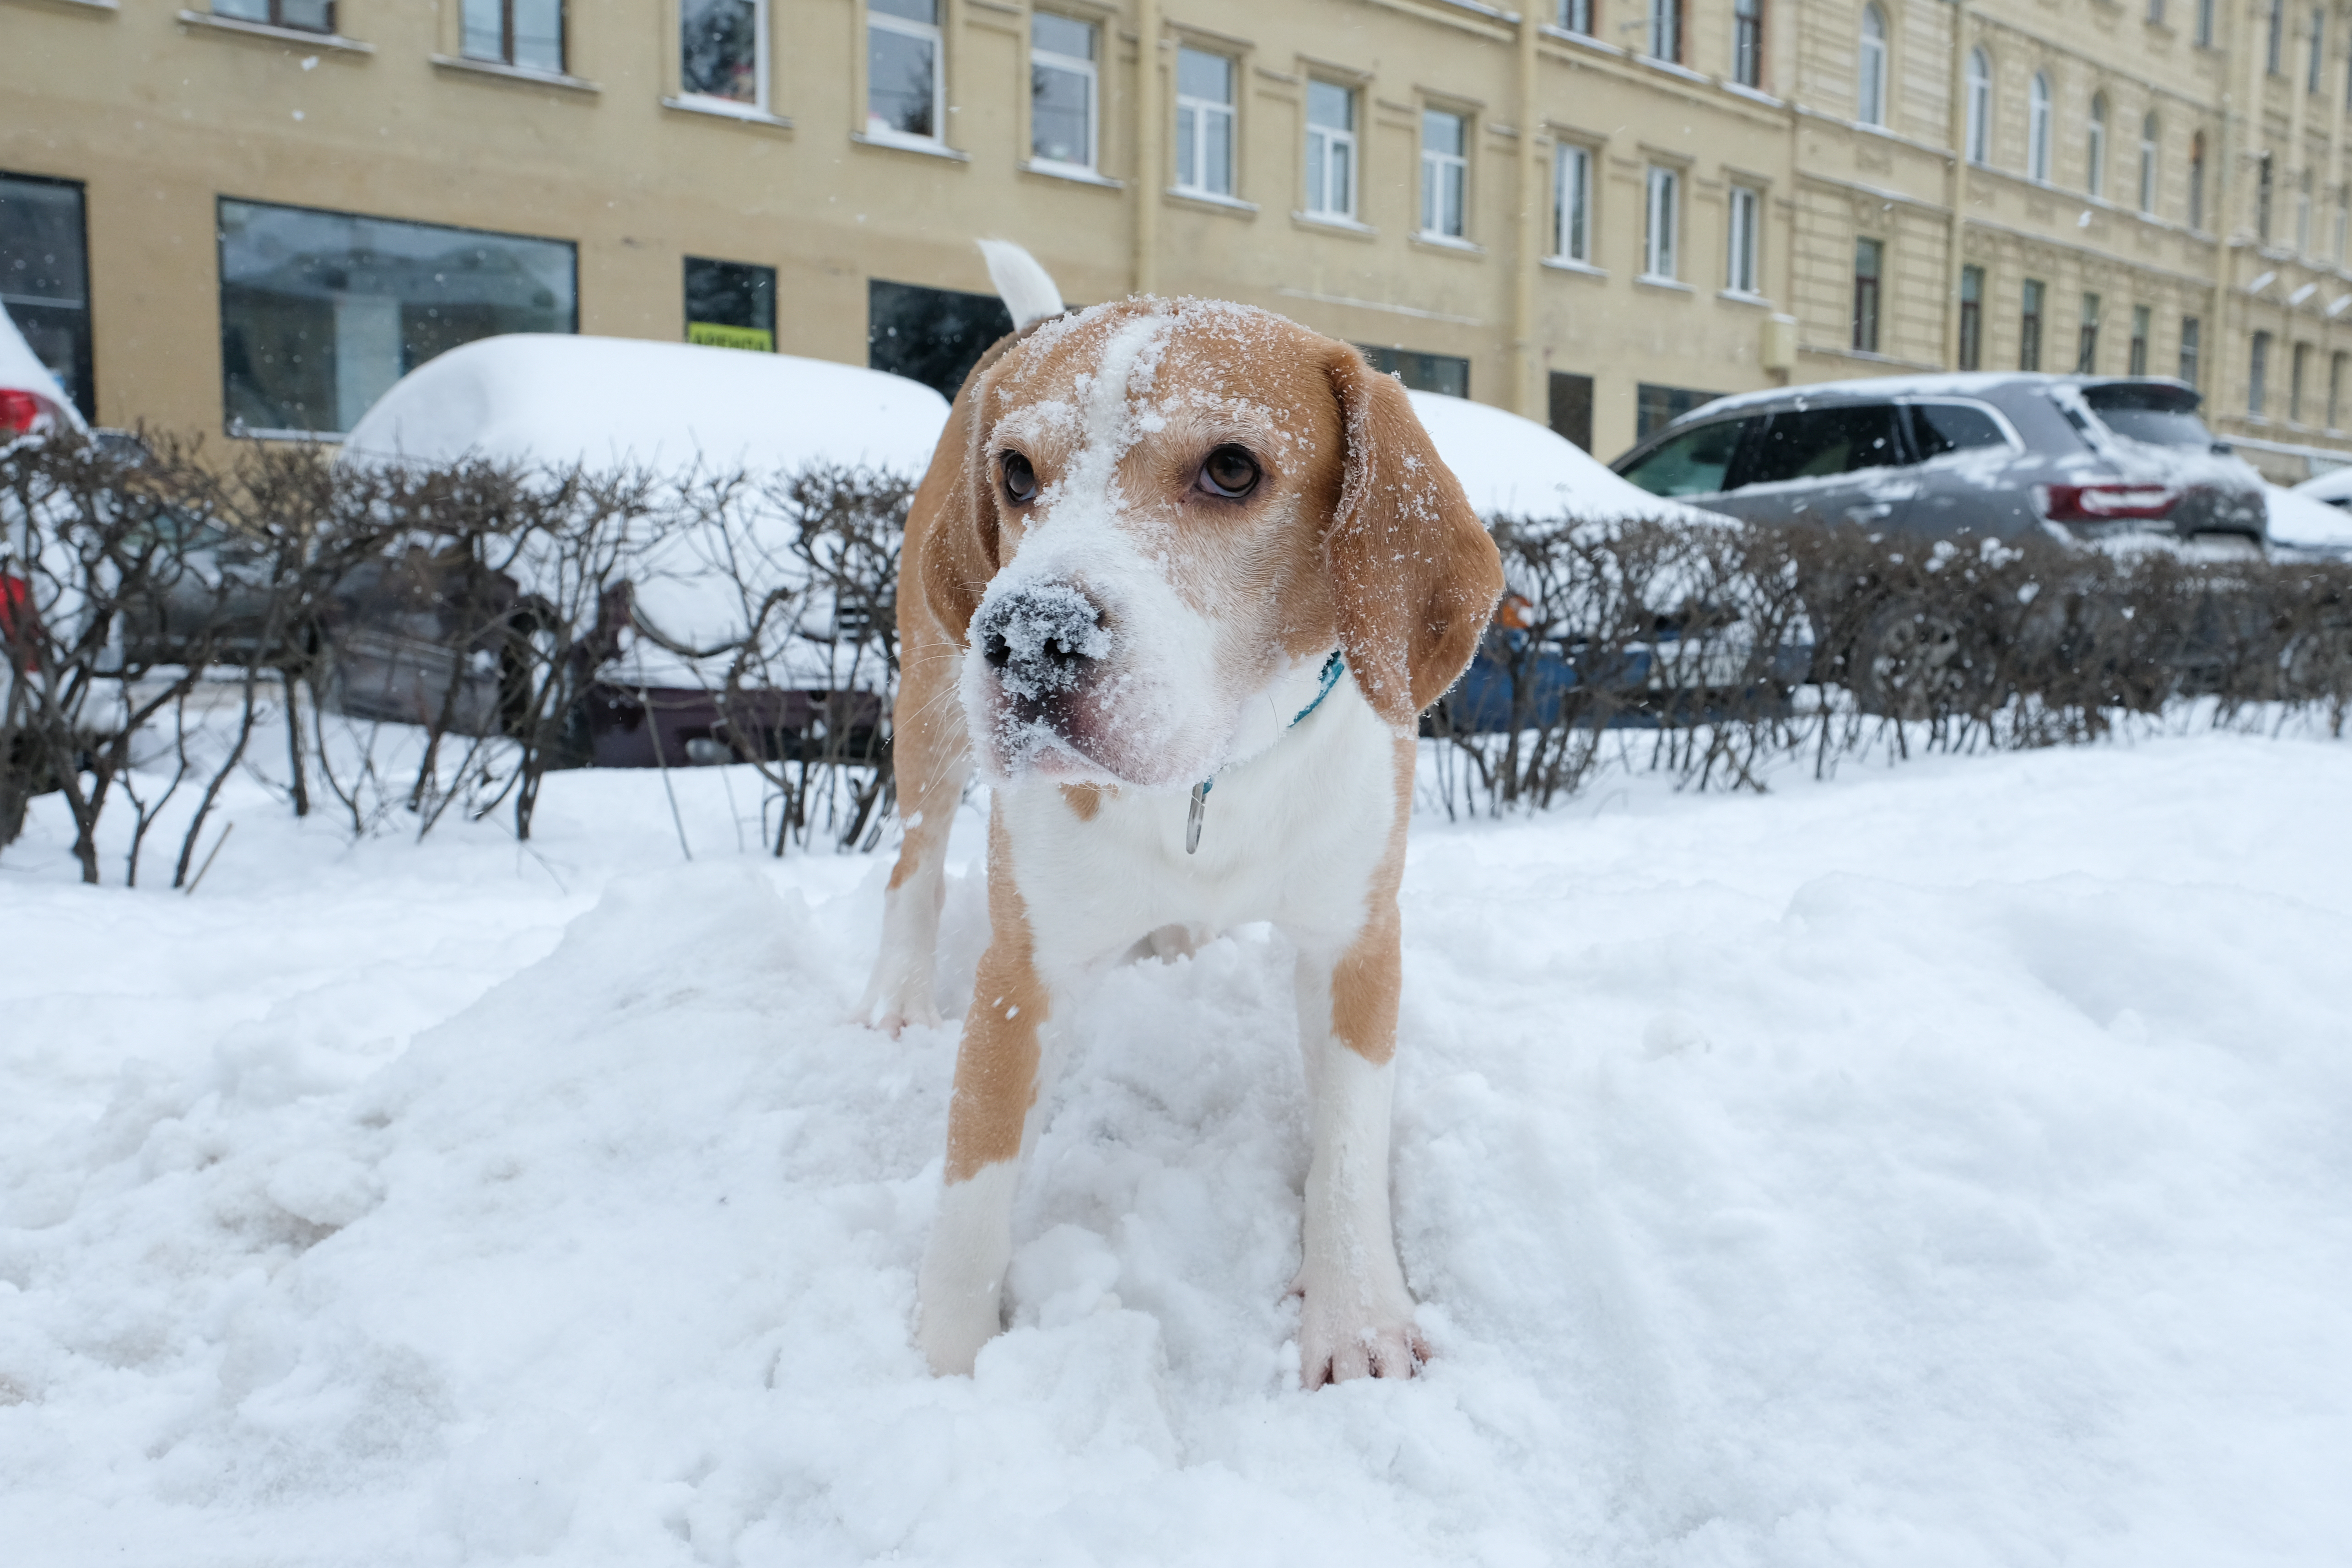 Не возвращено хозяину. Собака за 150 тысяч. Собака за 250 тысяч рублей. Собака за 5-6 тысяч рублей. Фото человека выгуливающего собаку в сквере по вновь выпавшему снегу.